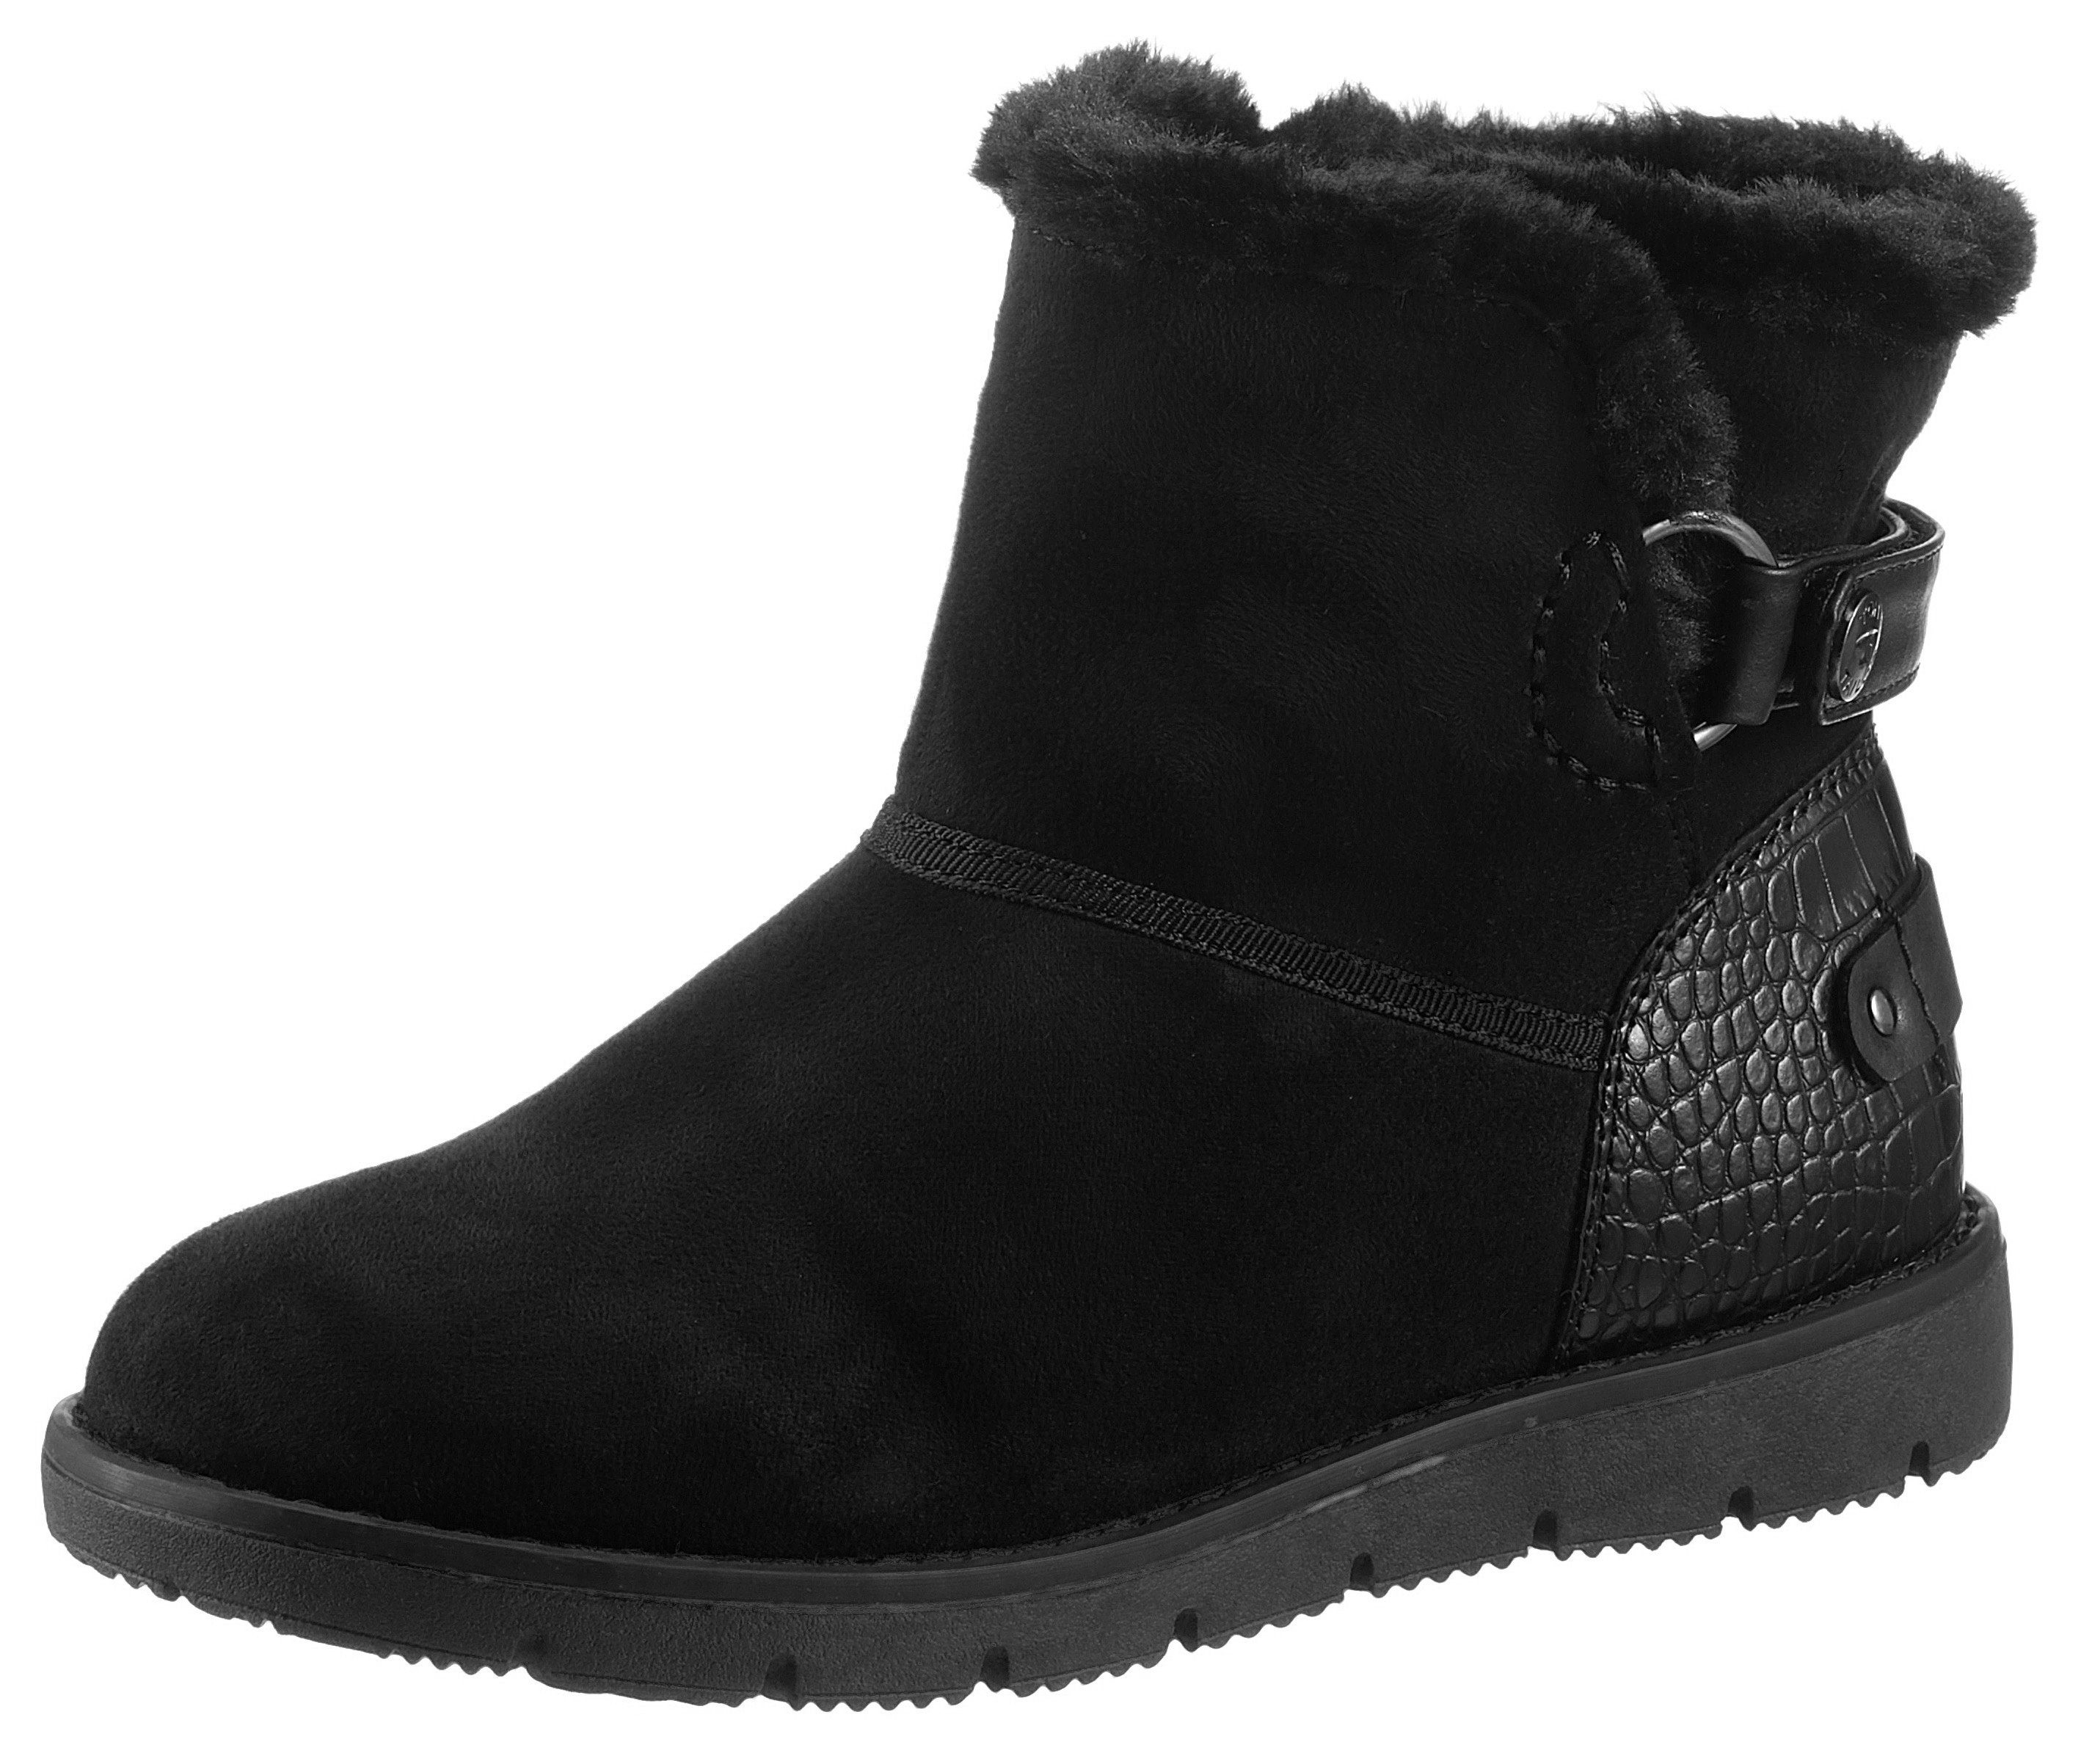 Damen Winter Boots » Warme Boots online kaufen | OTTO